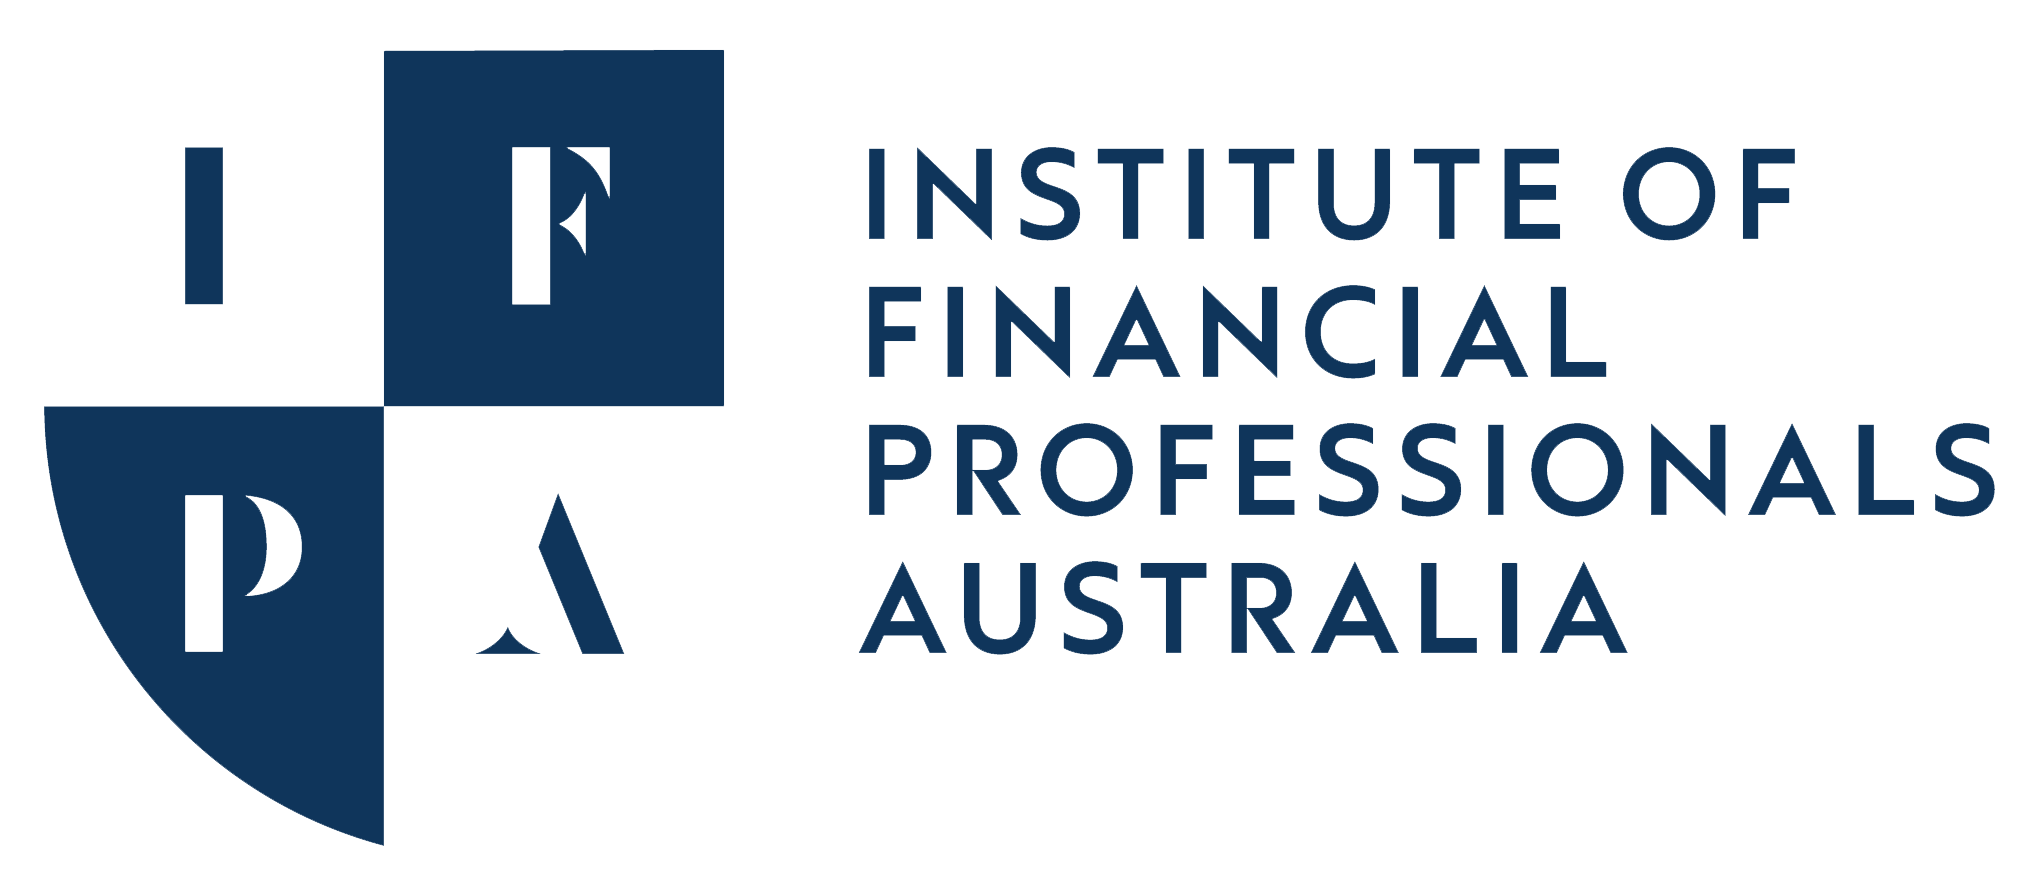 IFPA Full Primary Logo-Transparent